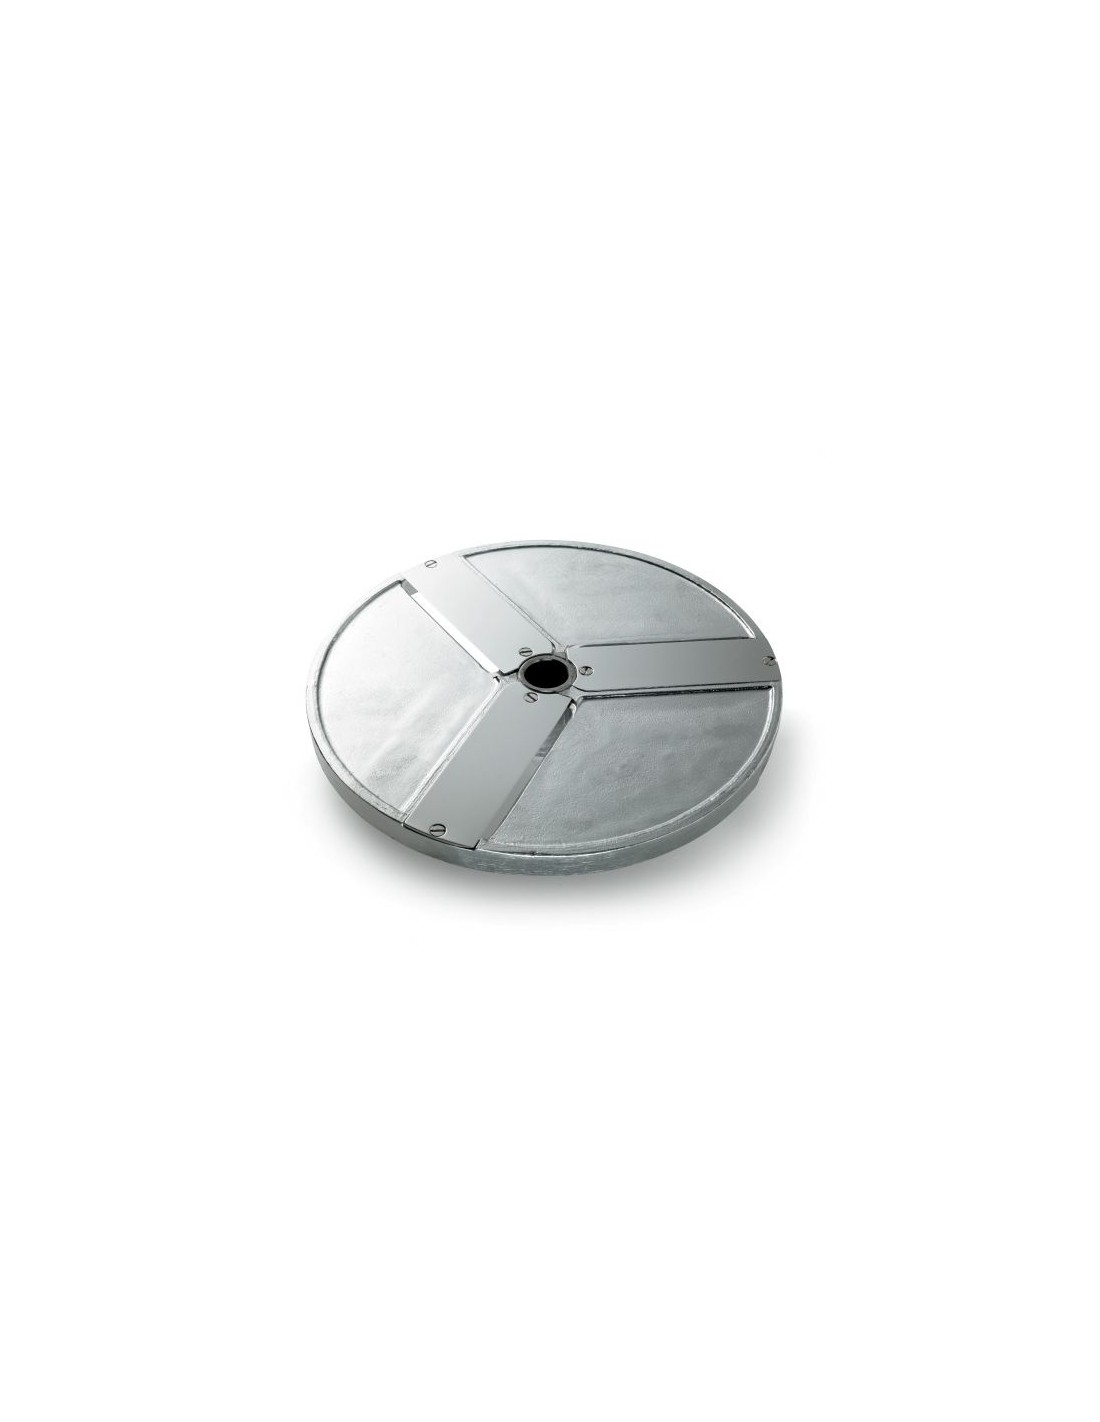 Disco para cortes - Diámetro 205 mm - Espesor de corte 30 mm